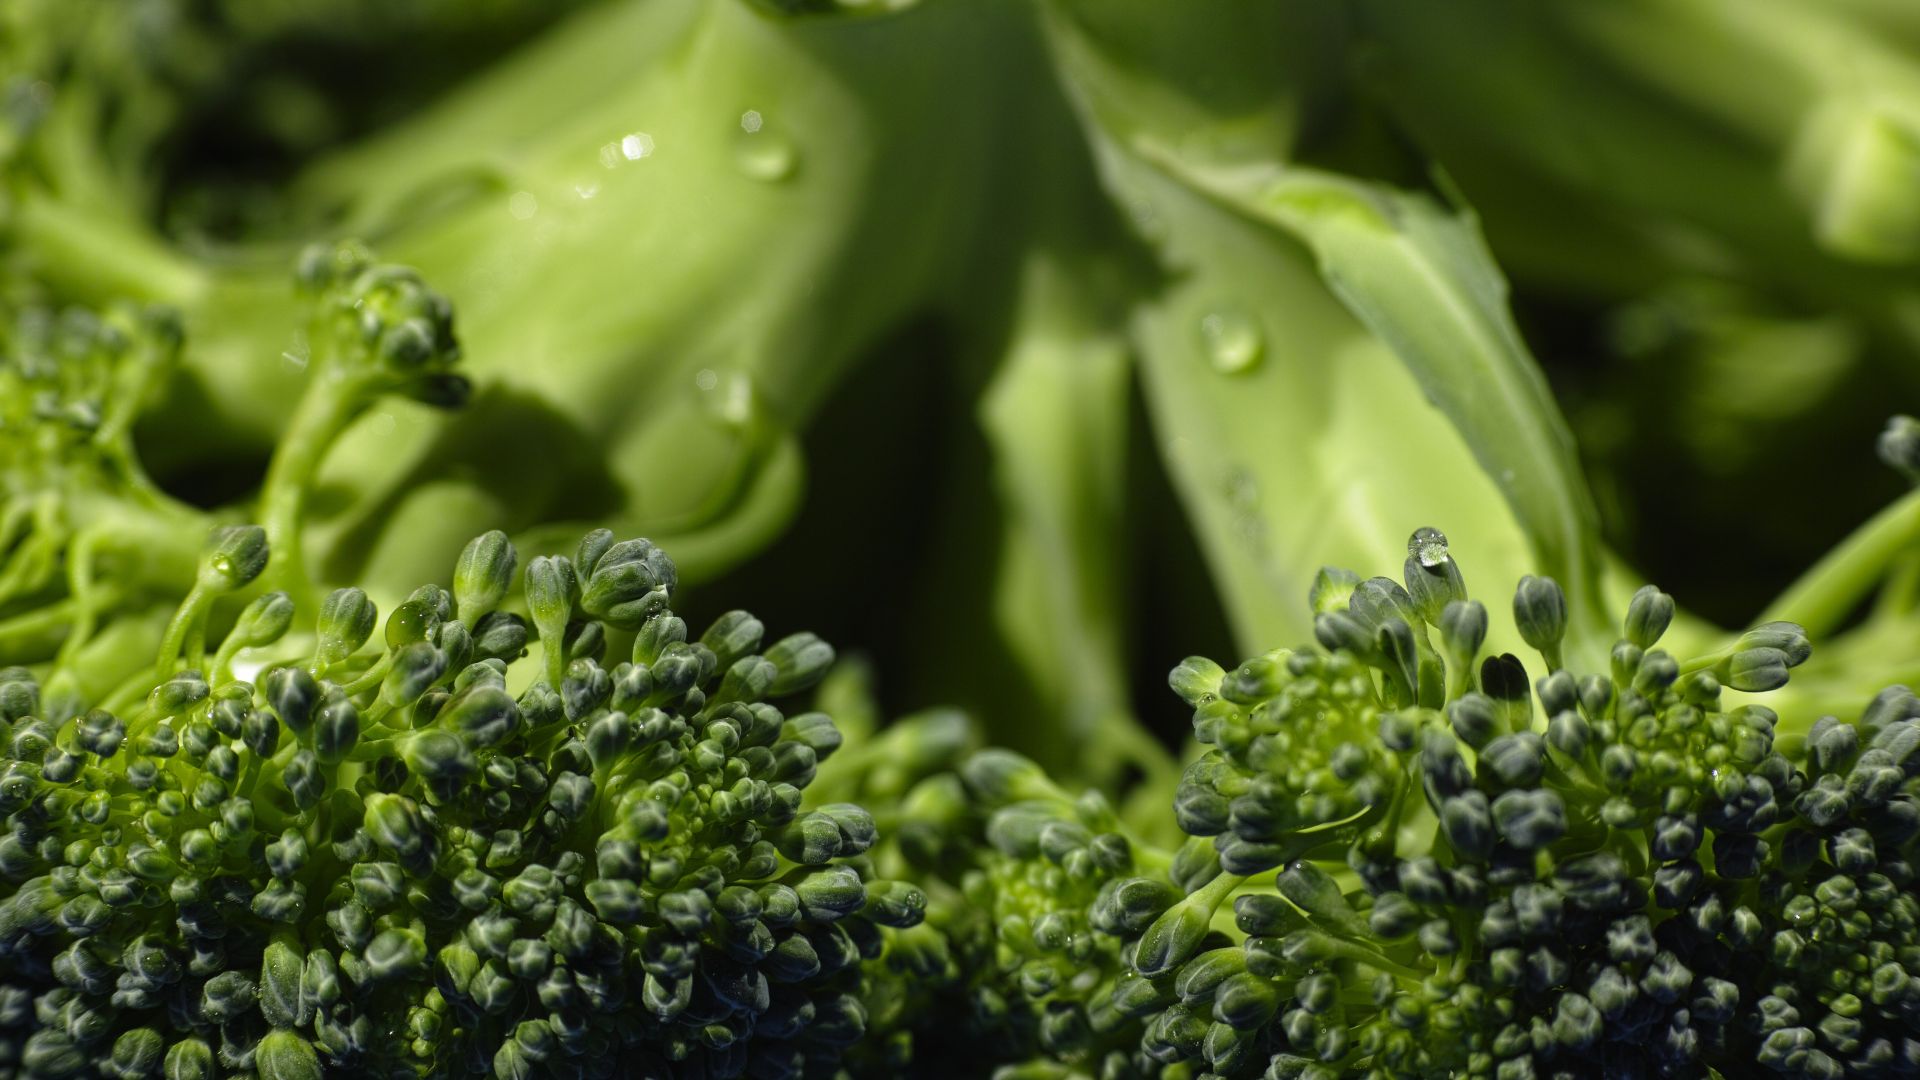 Wallpaper Broccoli Vegetables close up